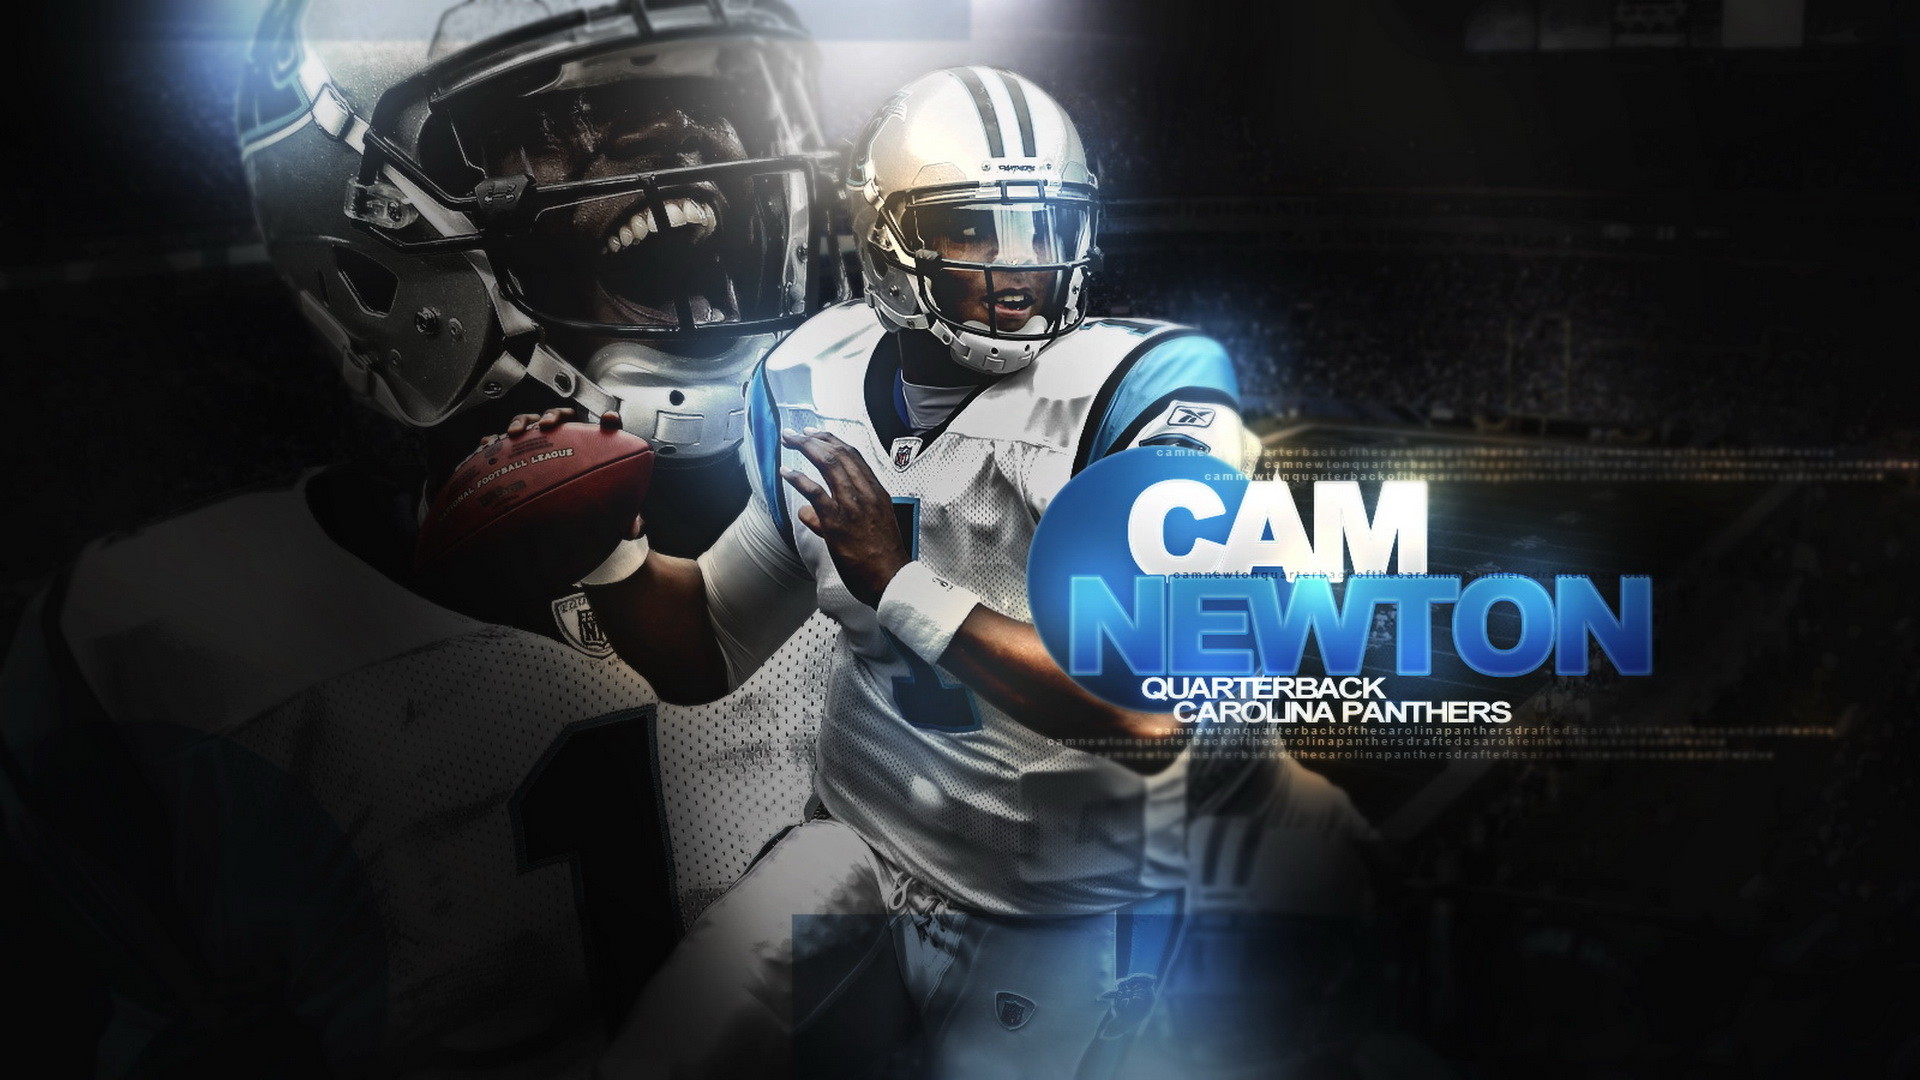 … Cam Newton 2014 NFL Wallpaper 01 Â· Wallpaperres.com